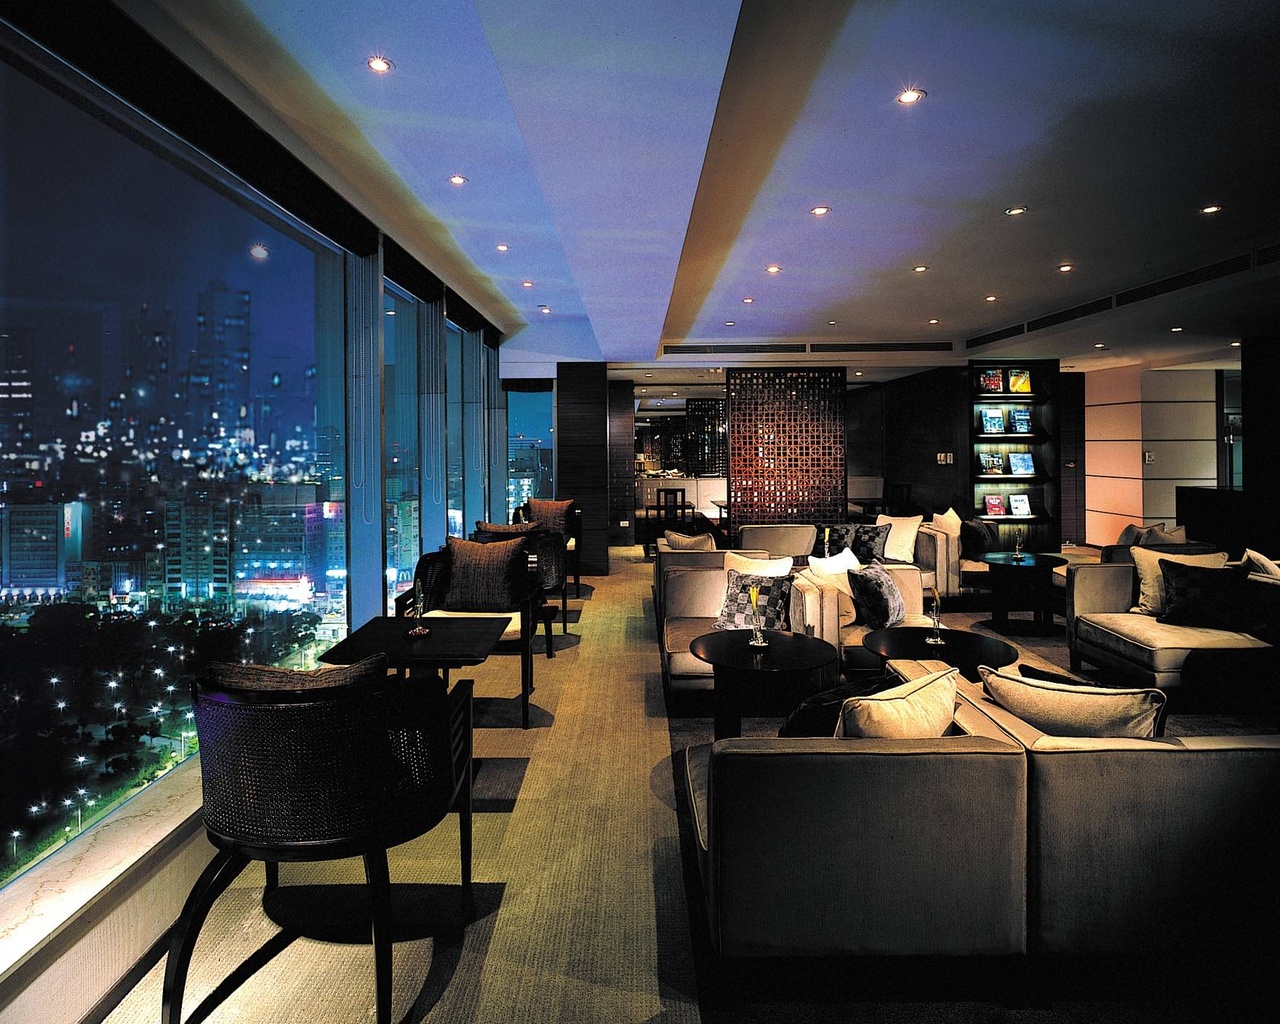 坐在晶華酒店19樓 環境寧靜Tai Pan (Executive) Lounge，行政樓層客人可整日免費品嚐精美早午晚餐，看著窗外城市景觀，實在享受。